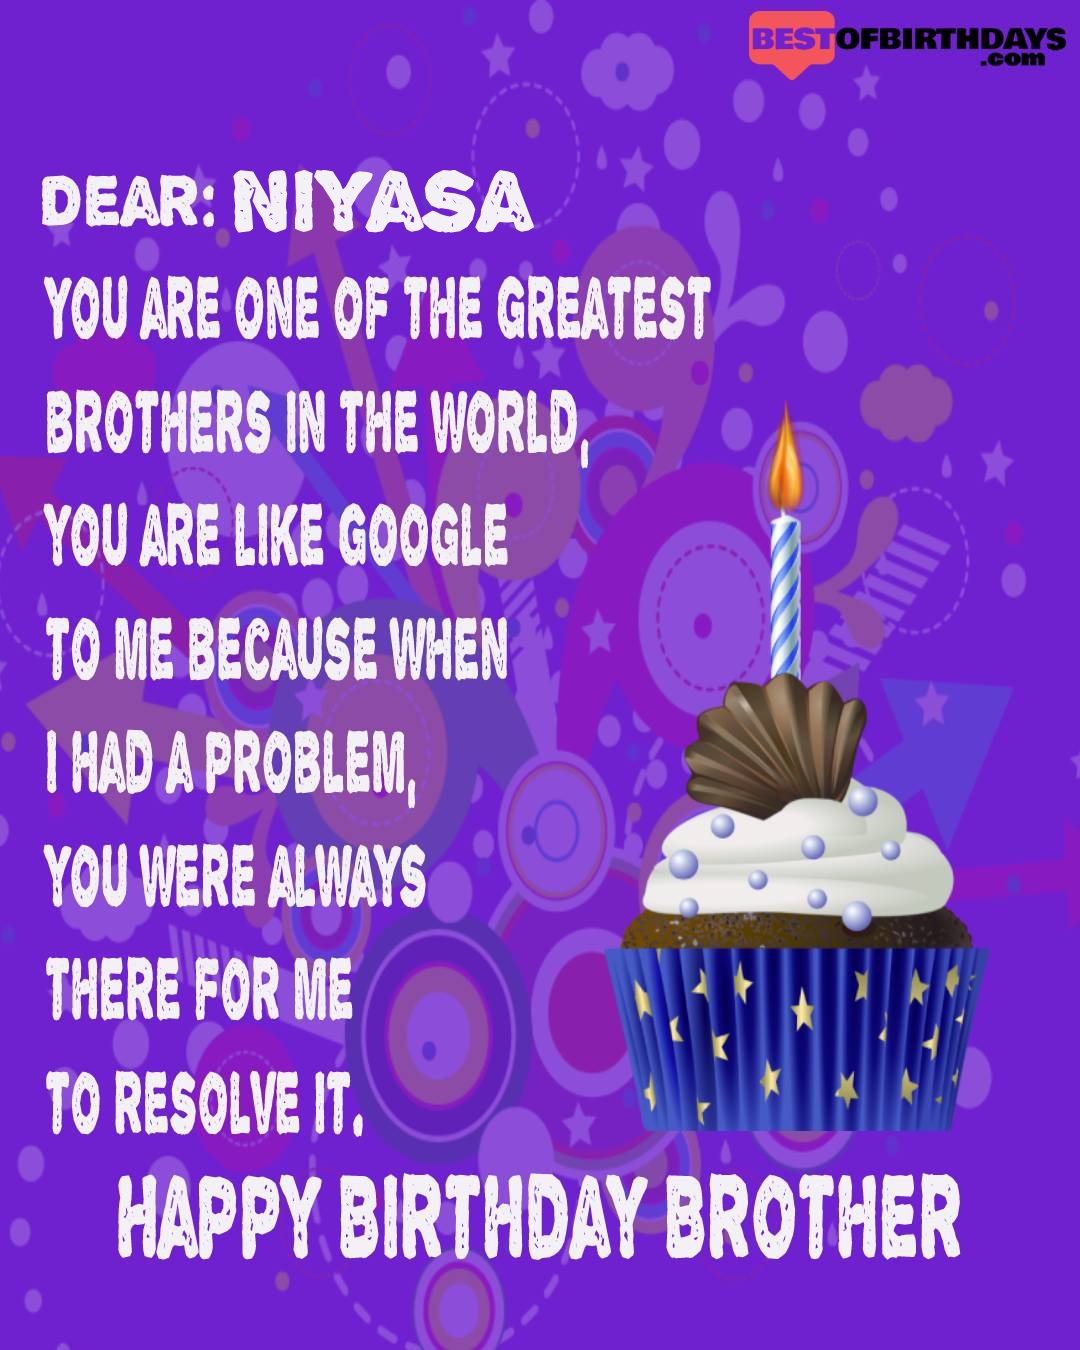 Happy birthday niyasa bhai brother bro